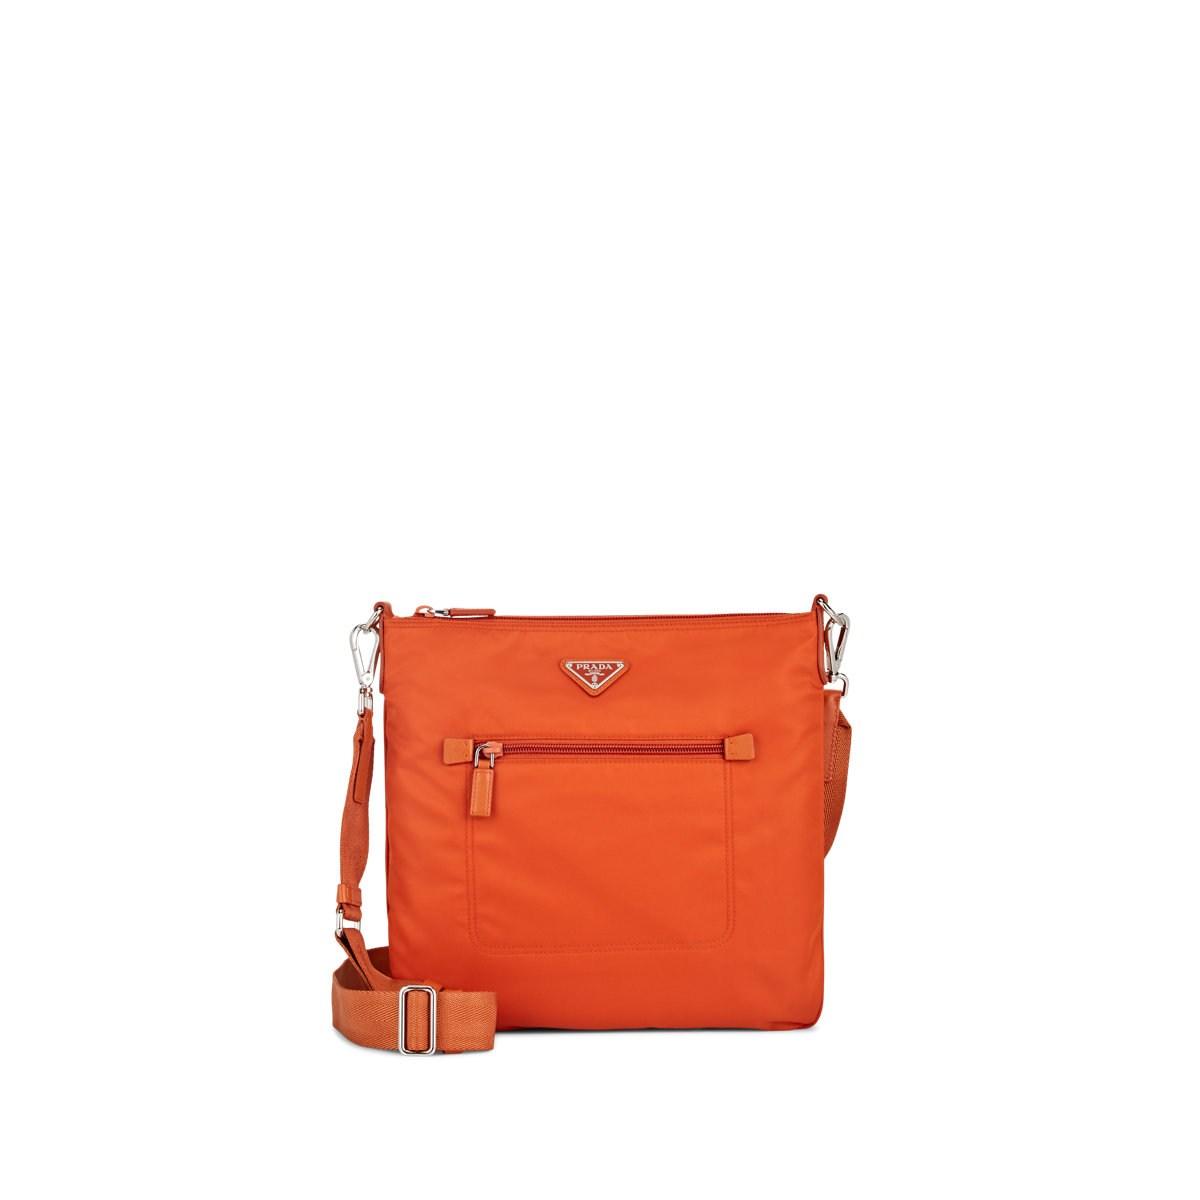 Prada Leather-trimmed Messenger Bag in Orange - Lyst